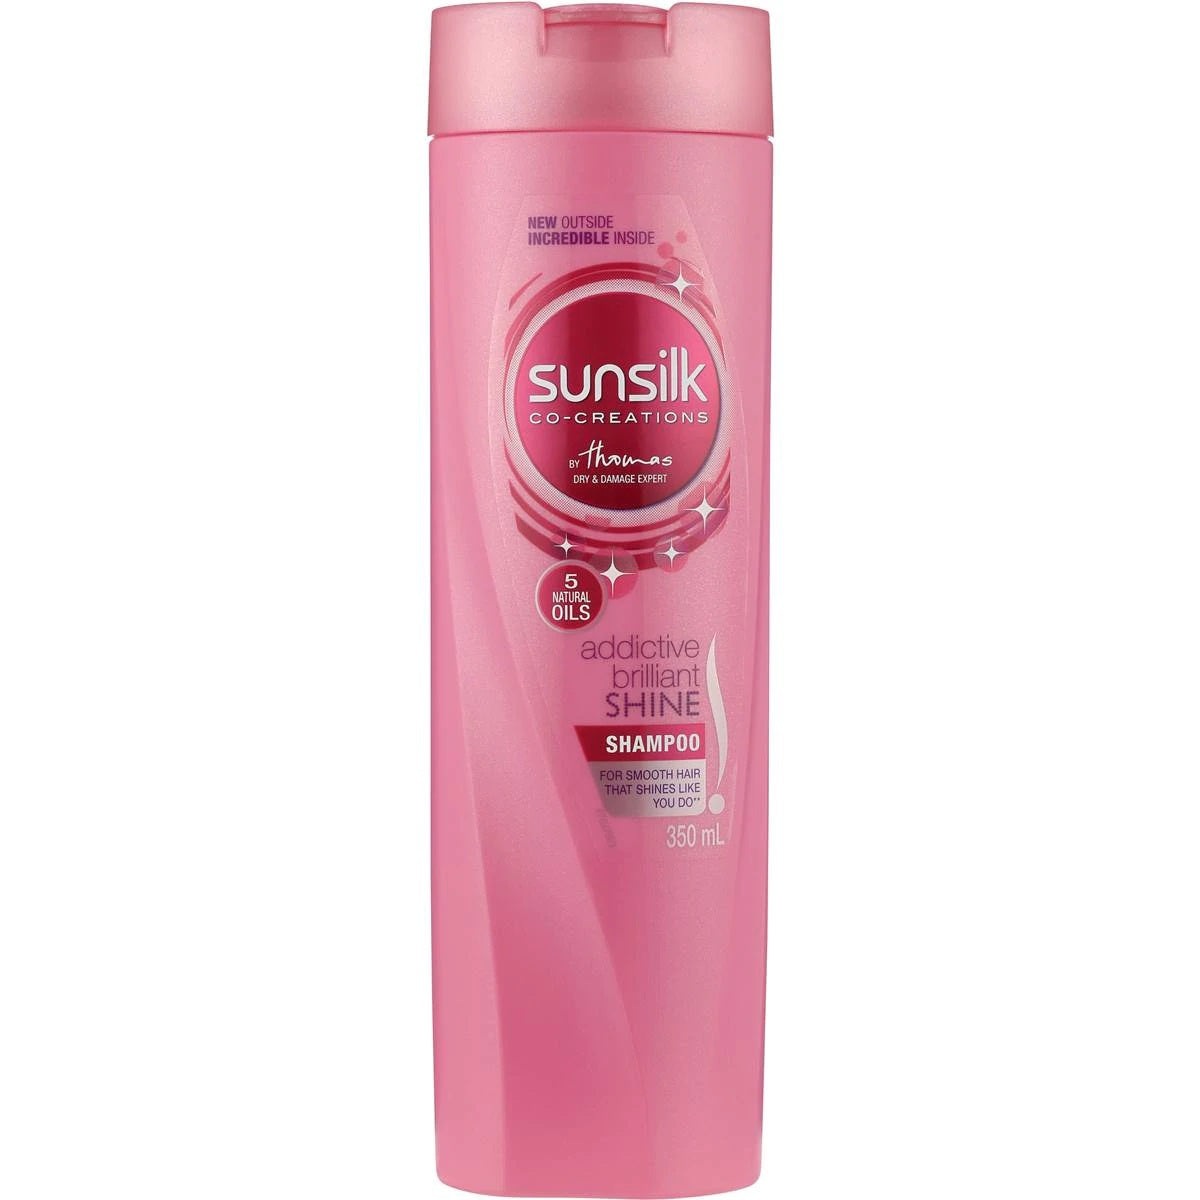 Sunsilk Shine Shampoo 350mL